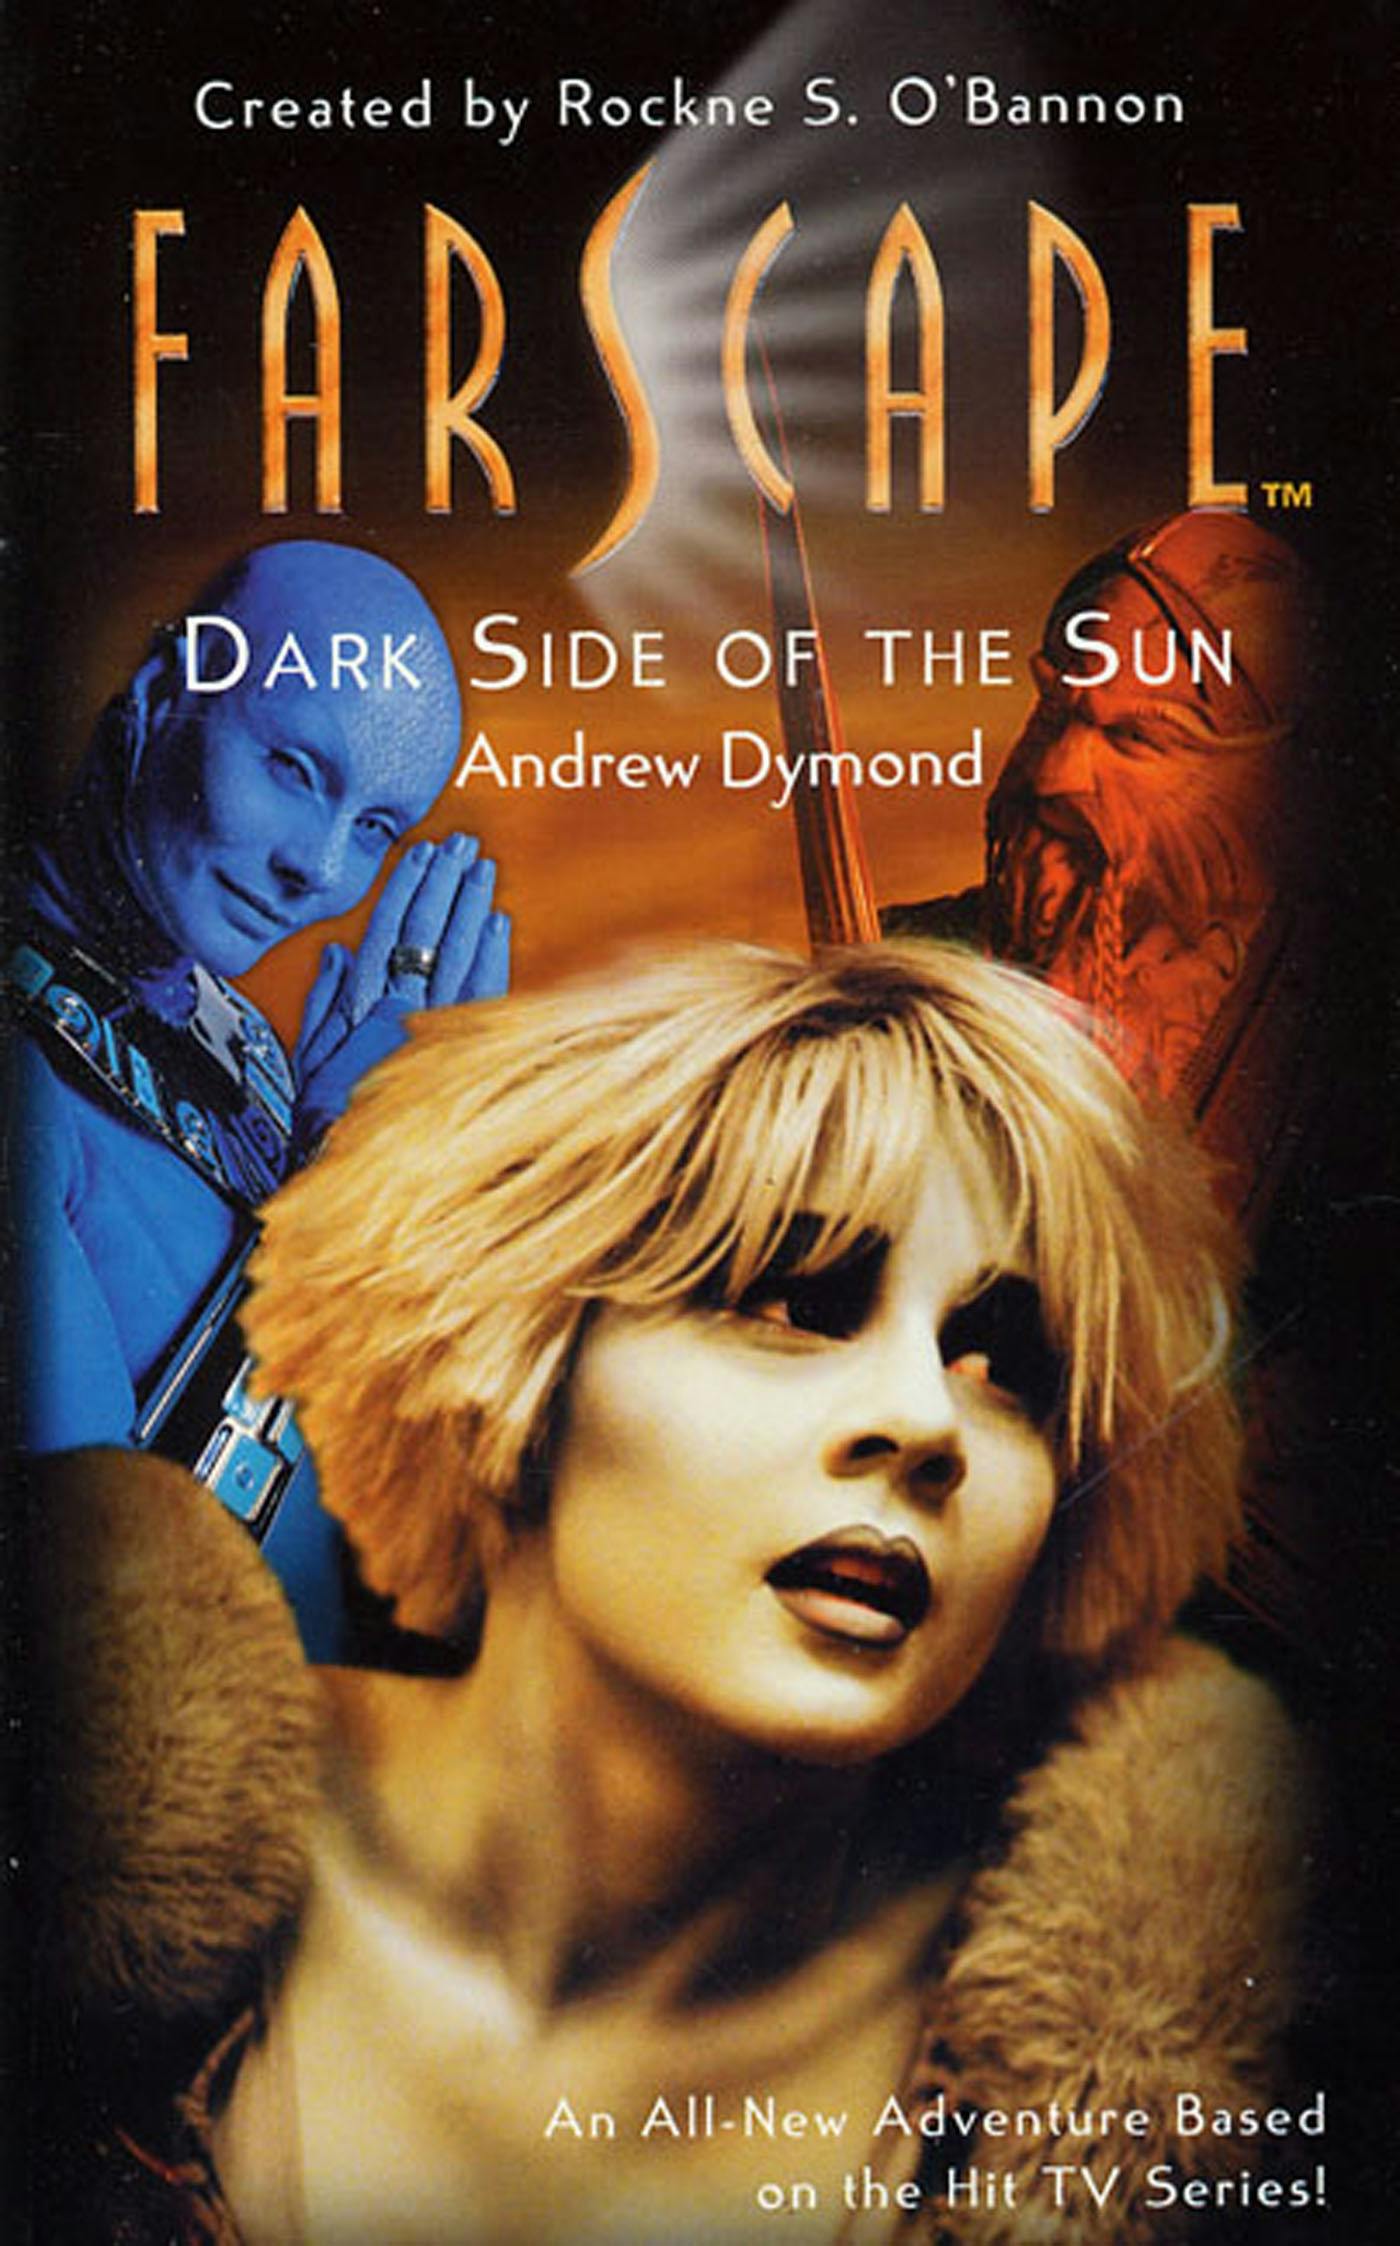 Farscape Dark Side of the